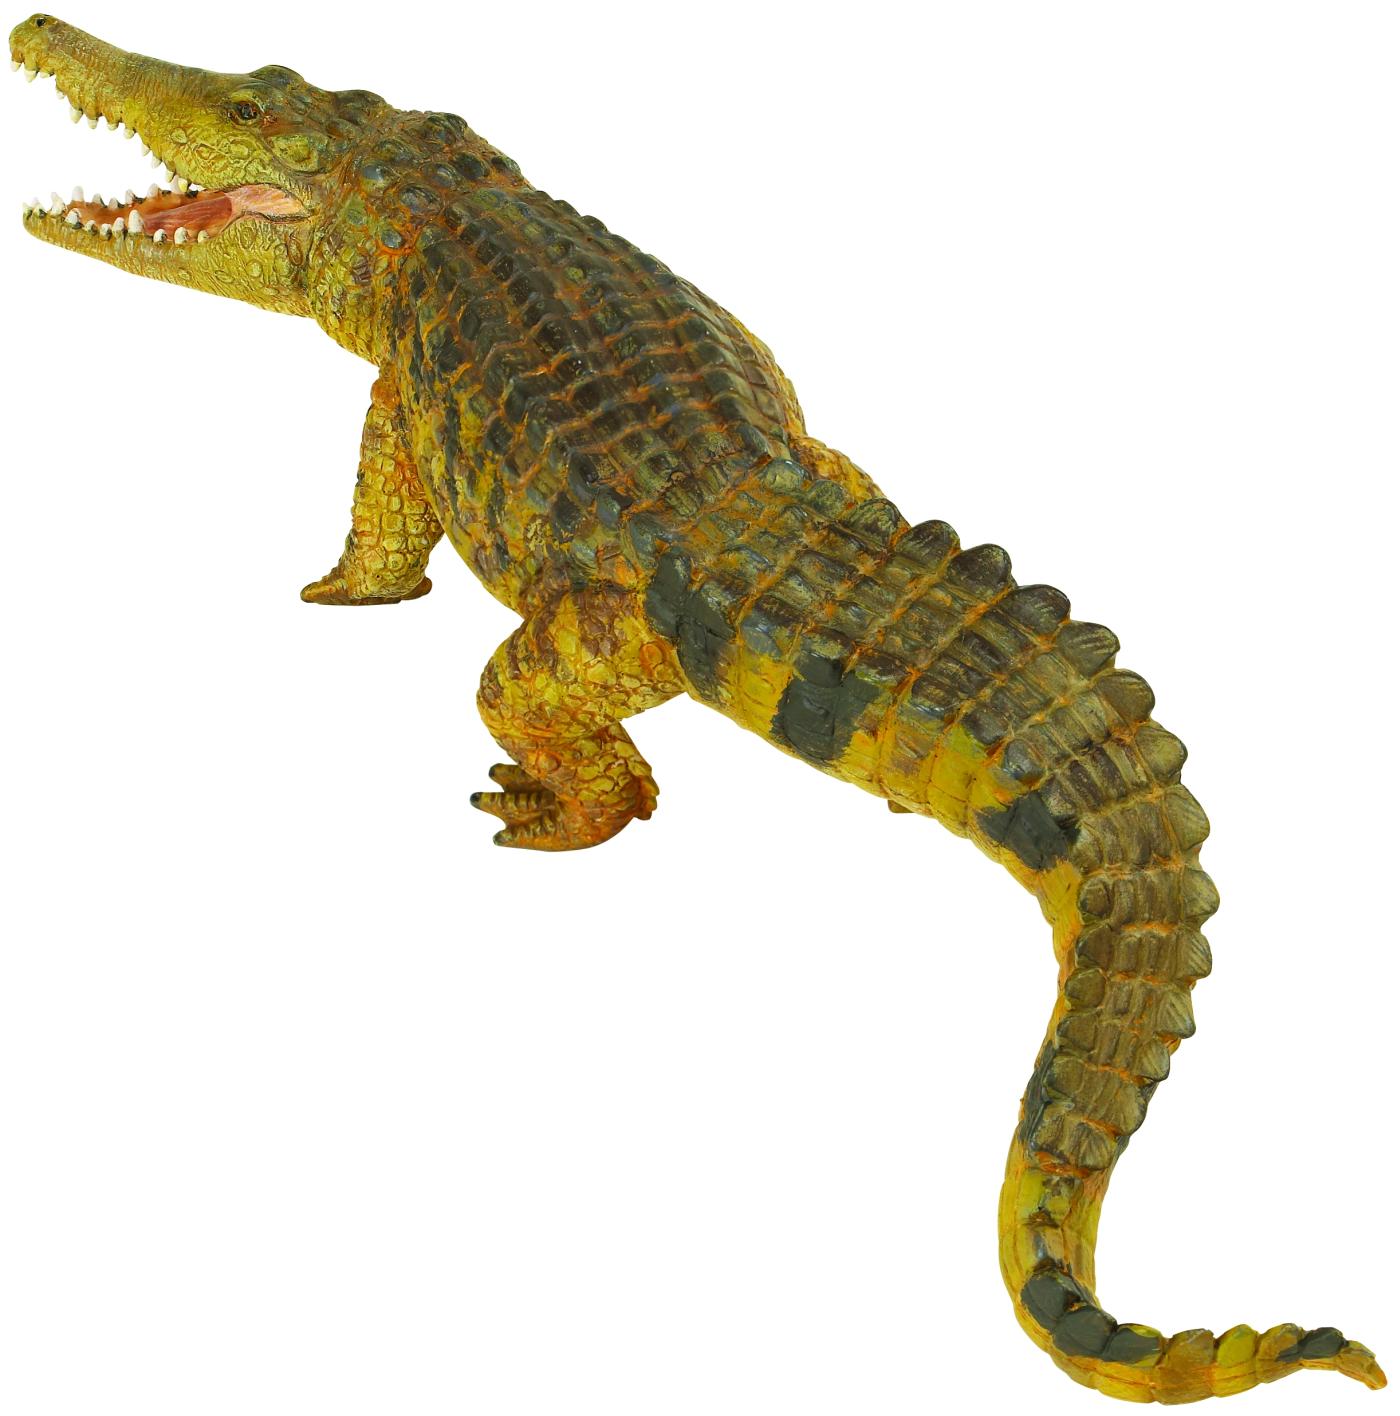 Safari Ltd 2626 Saltwater crocodile - animal figures at spielzeug ...